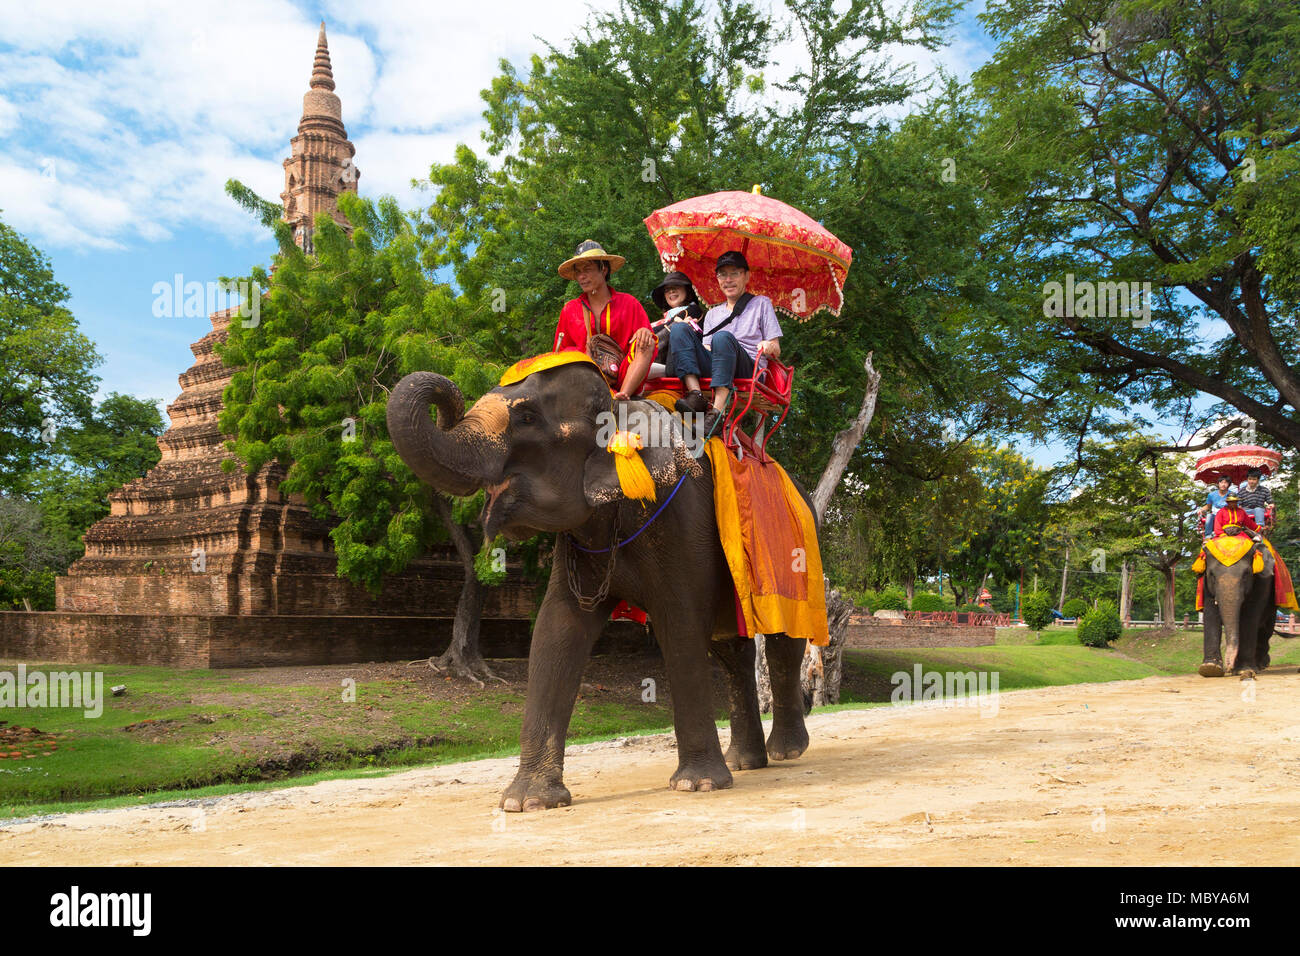 Tourists on elephant tour around Ayutthaya, Thailand Stock Photo